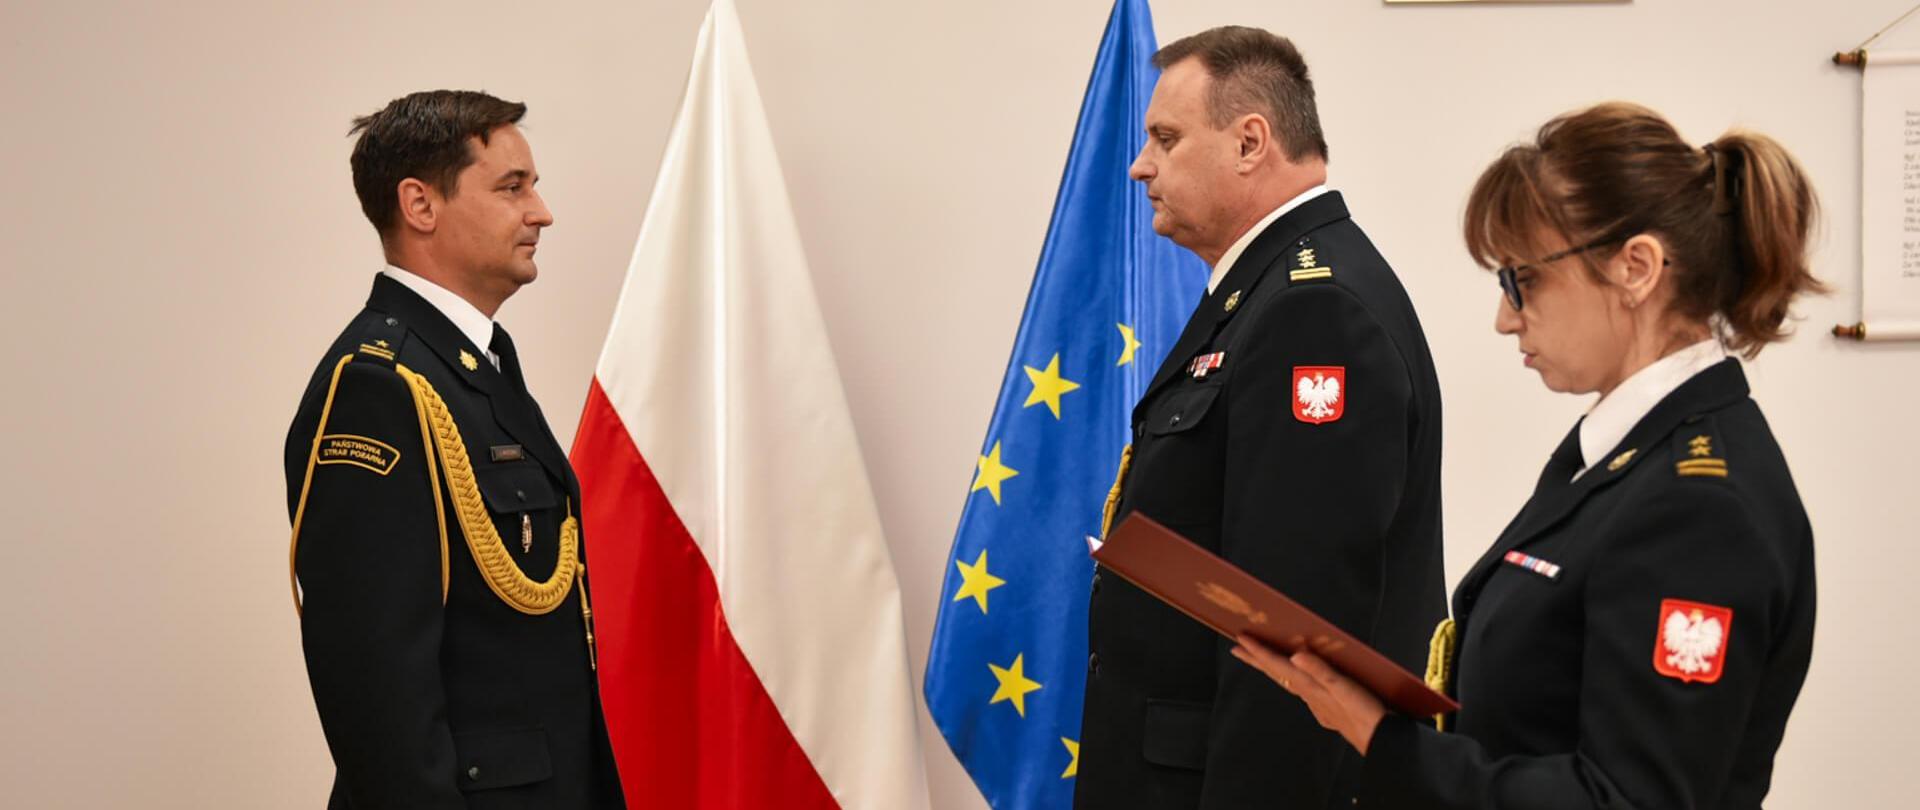 po lewej stoi jednej strażak na przeciwko niego dwóje strażaków, funkcjonariuszka stojąca po prawej trzyma w rękach teczkę i odczytuje pismo, za nimi flagi polski i unii europejskiej